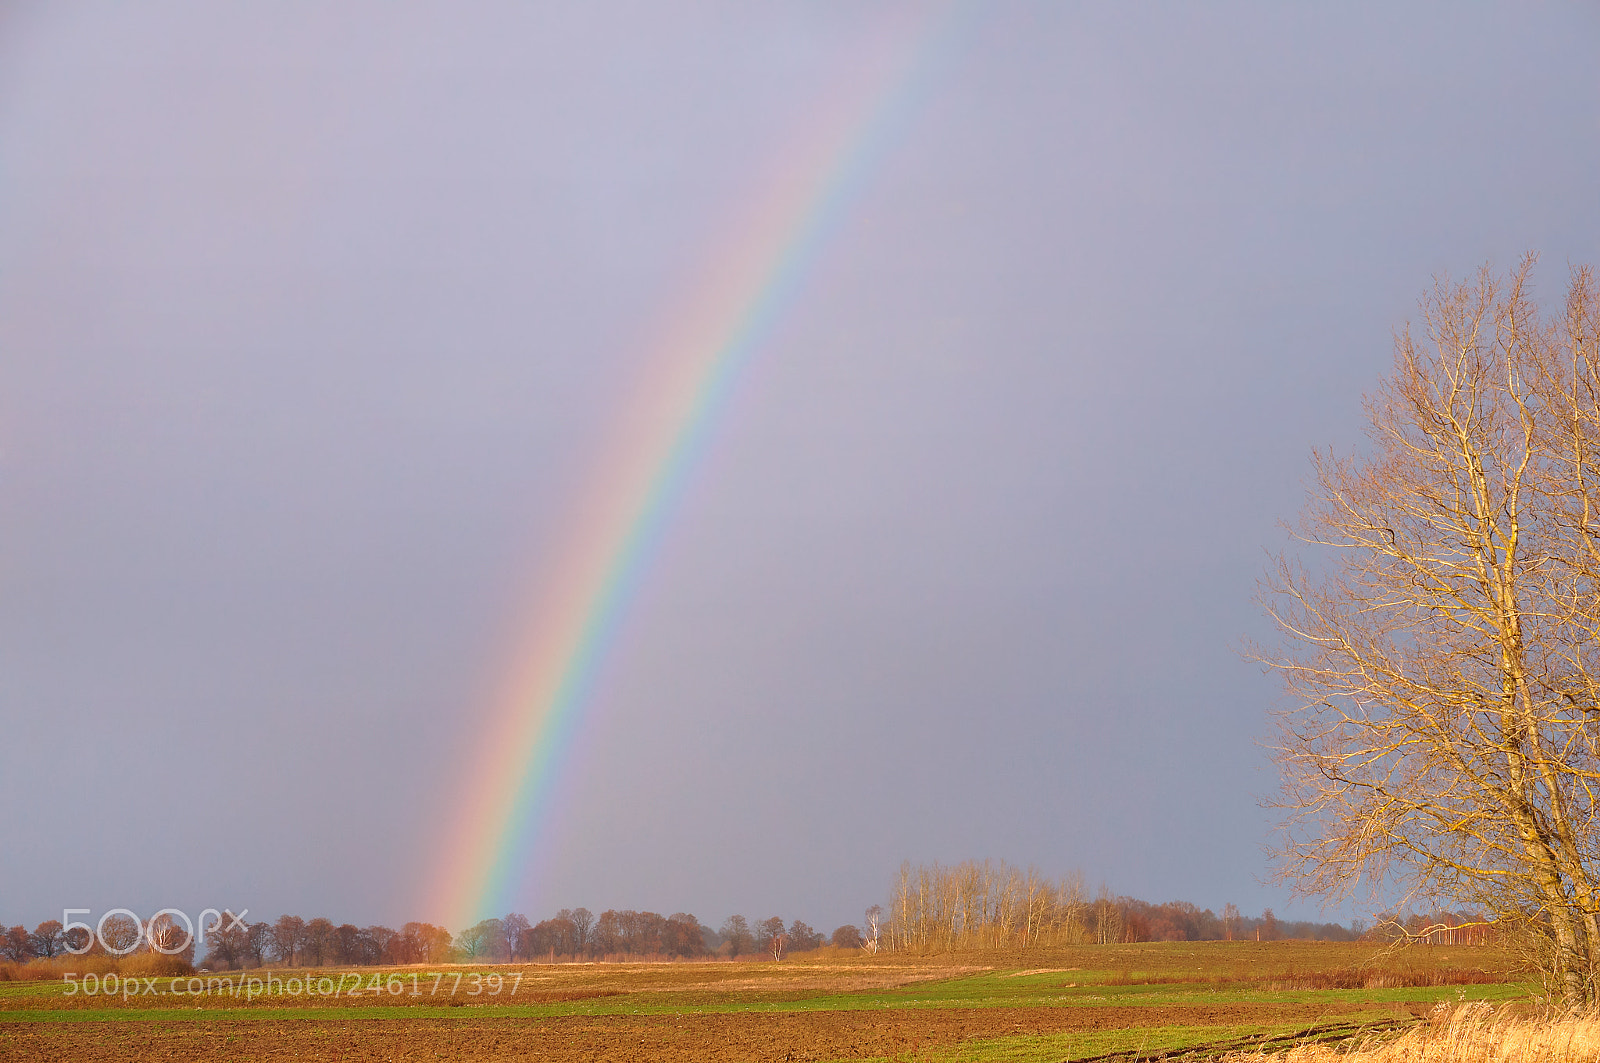 Sony Alpha NEX-3N sample photo. Rainbow in a field photography